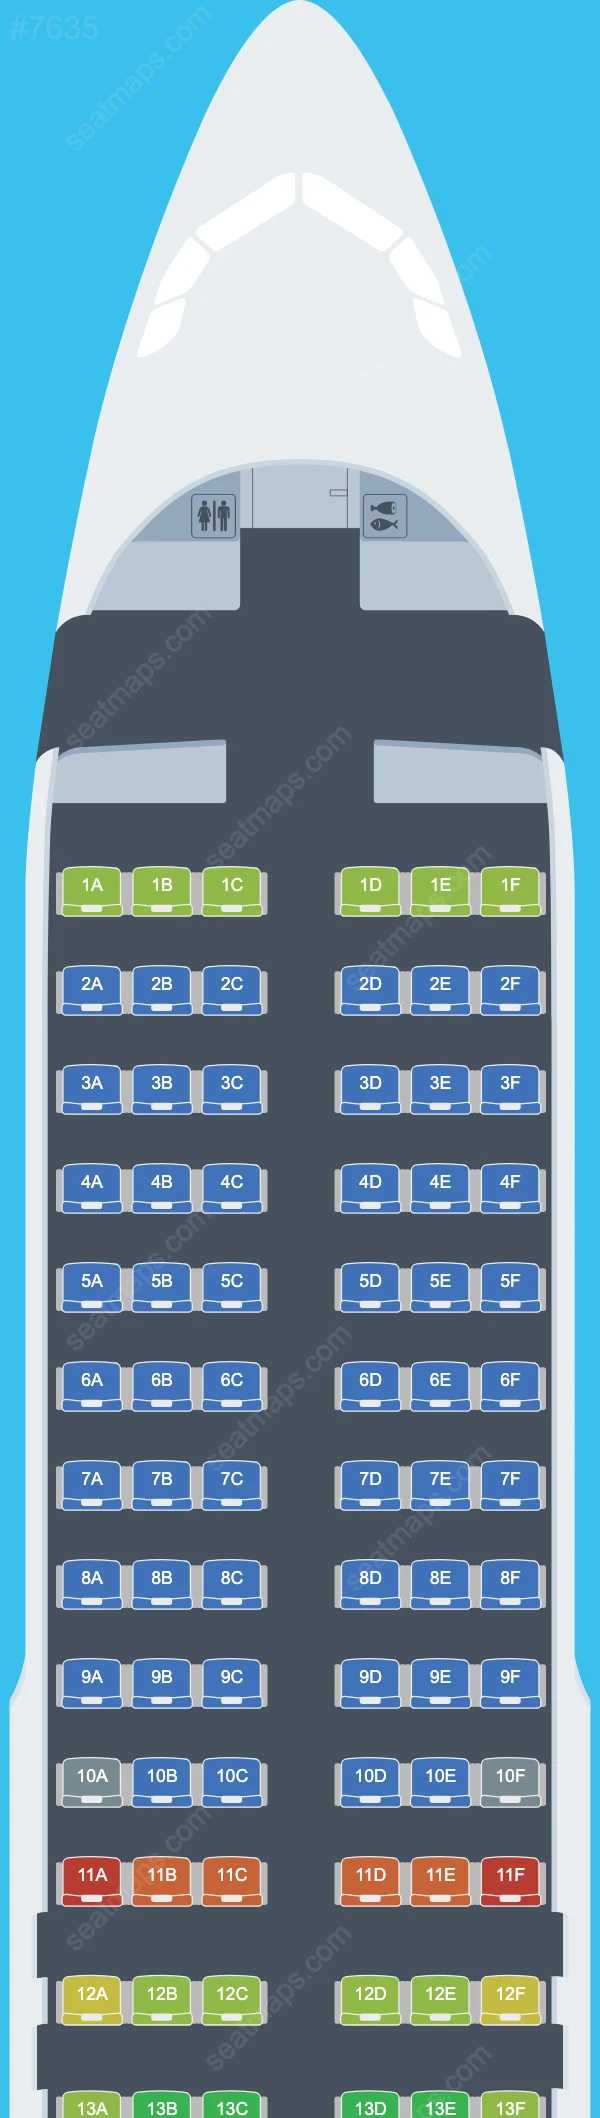 Схема салонов GX Airlines в самолетах Airbus A320 A320-200